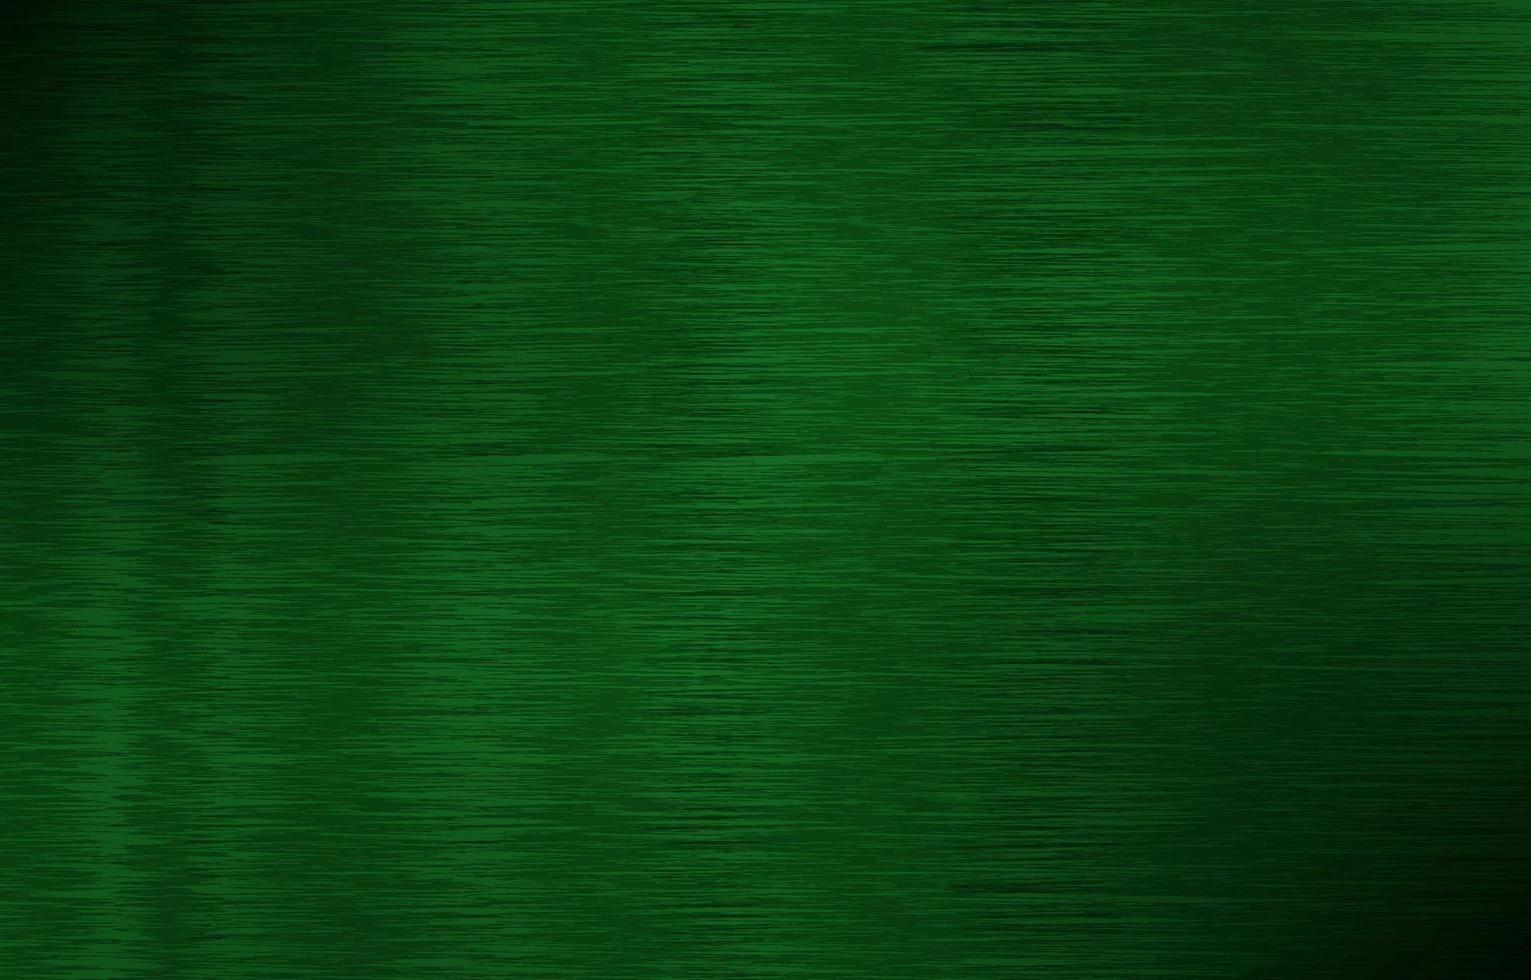 Green Textures Background vector